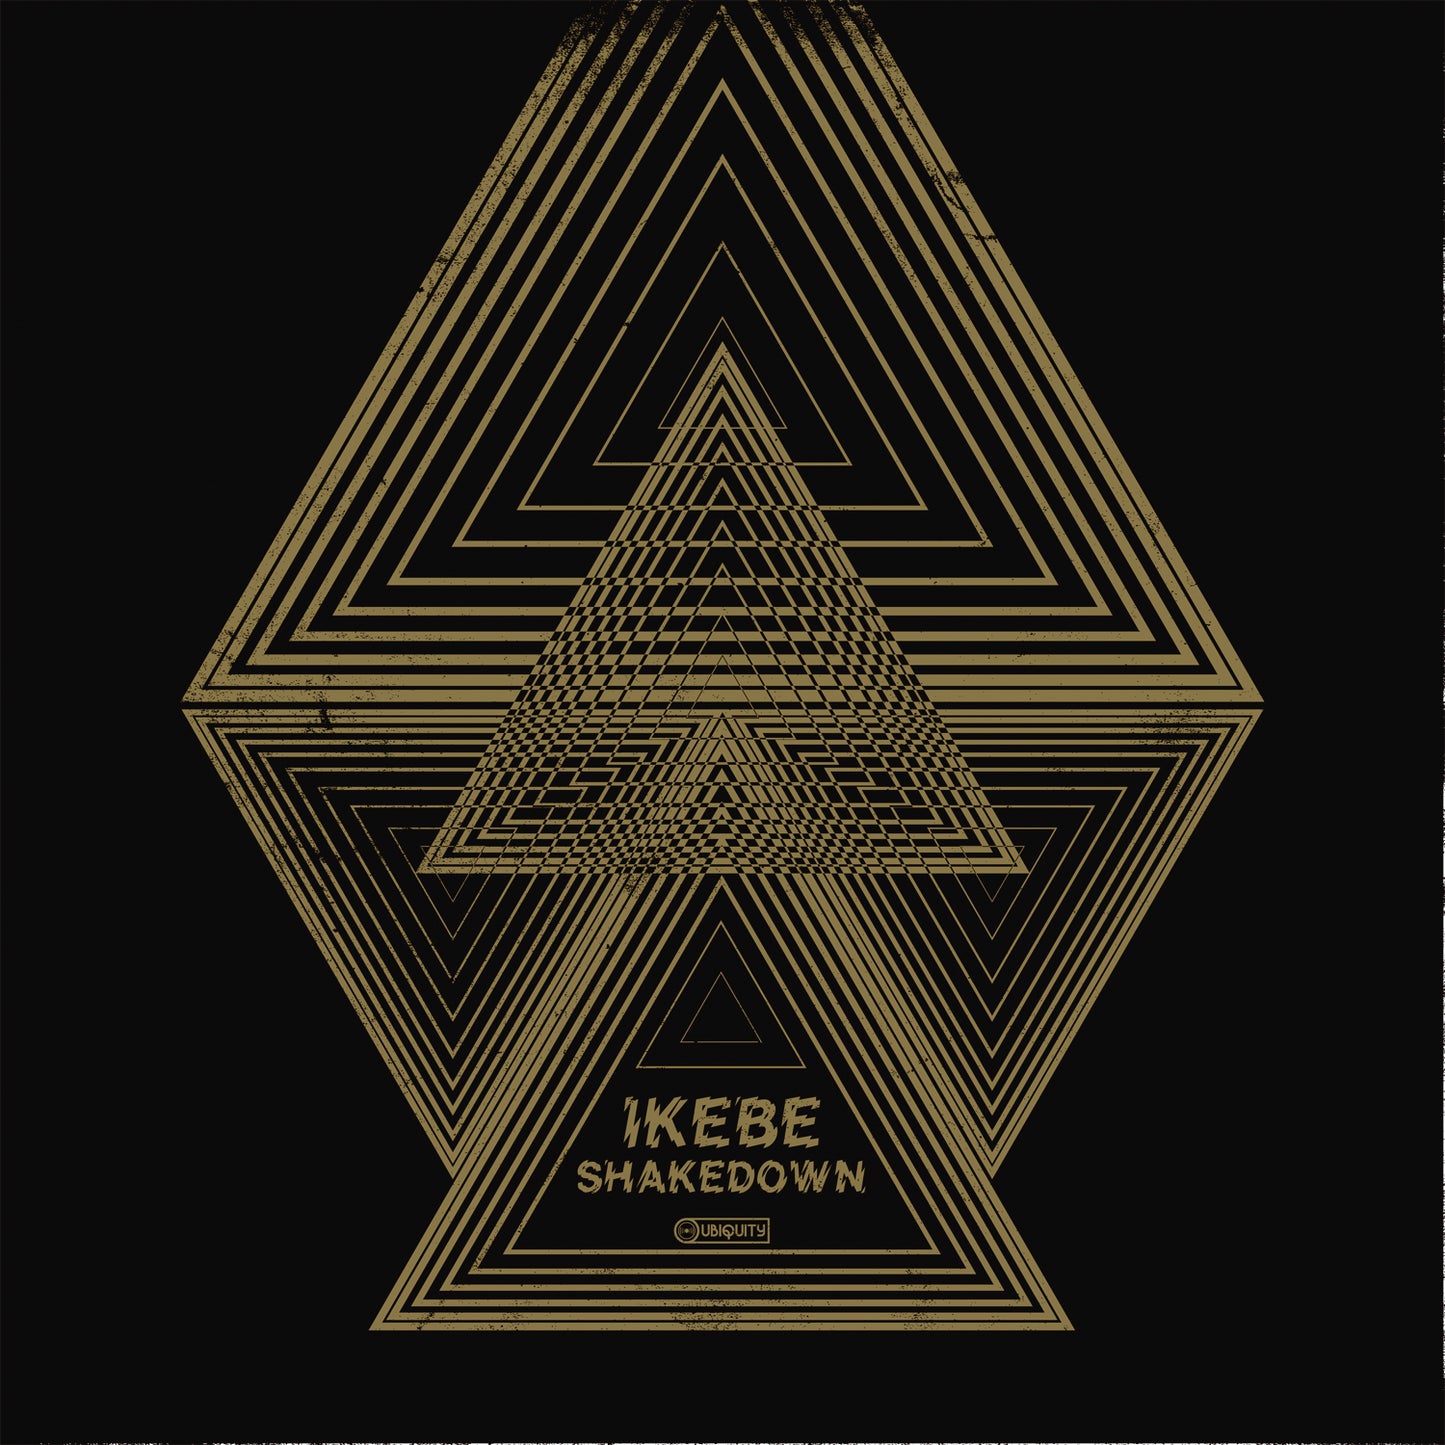 Ikebe Shakedown "Ikebe Shakedown" LP